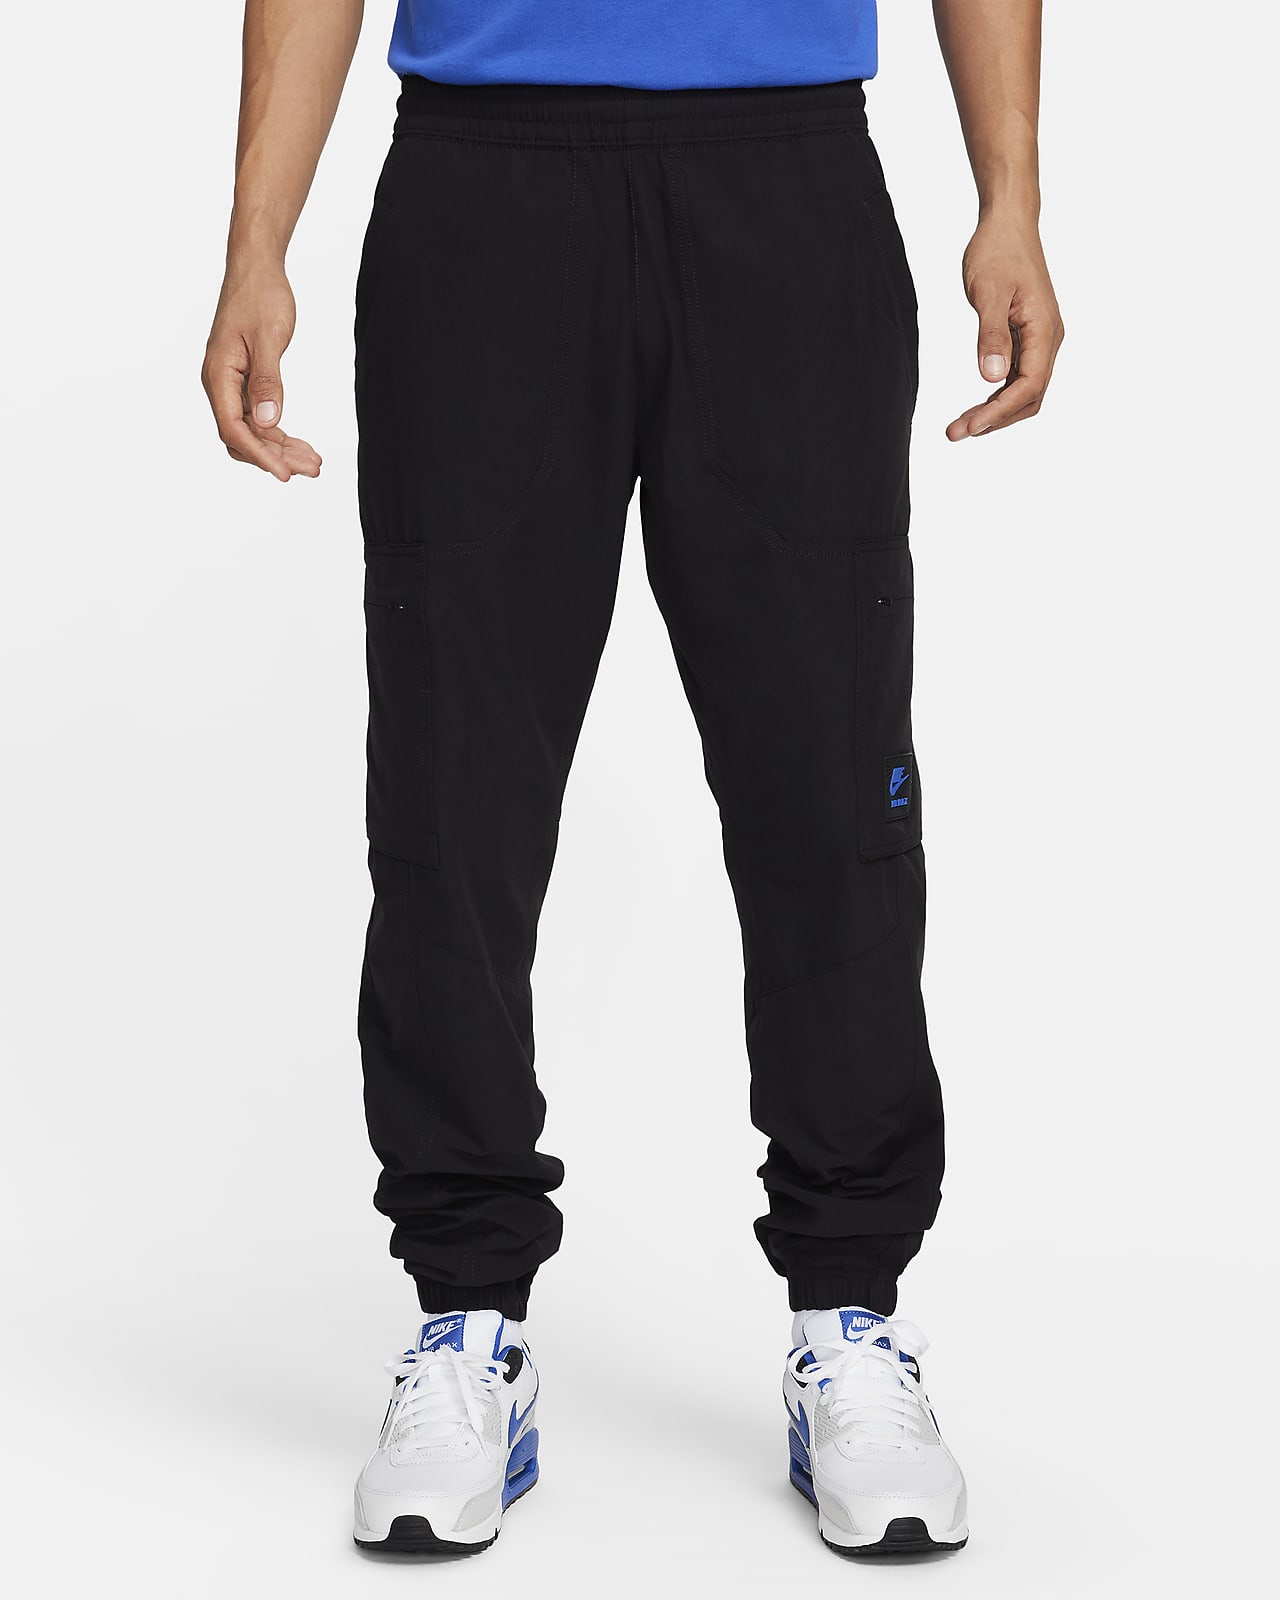 Men's Trousers Nike Air – TPlus